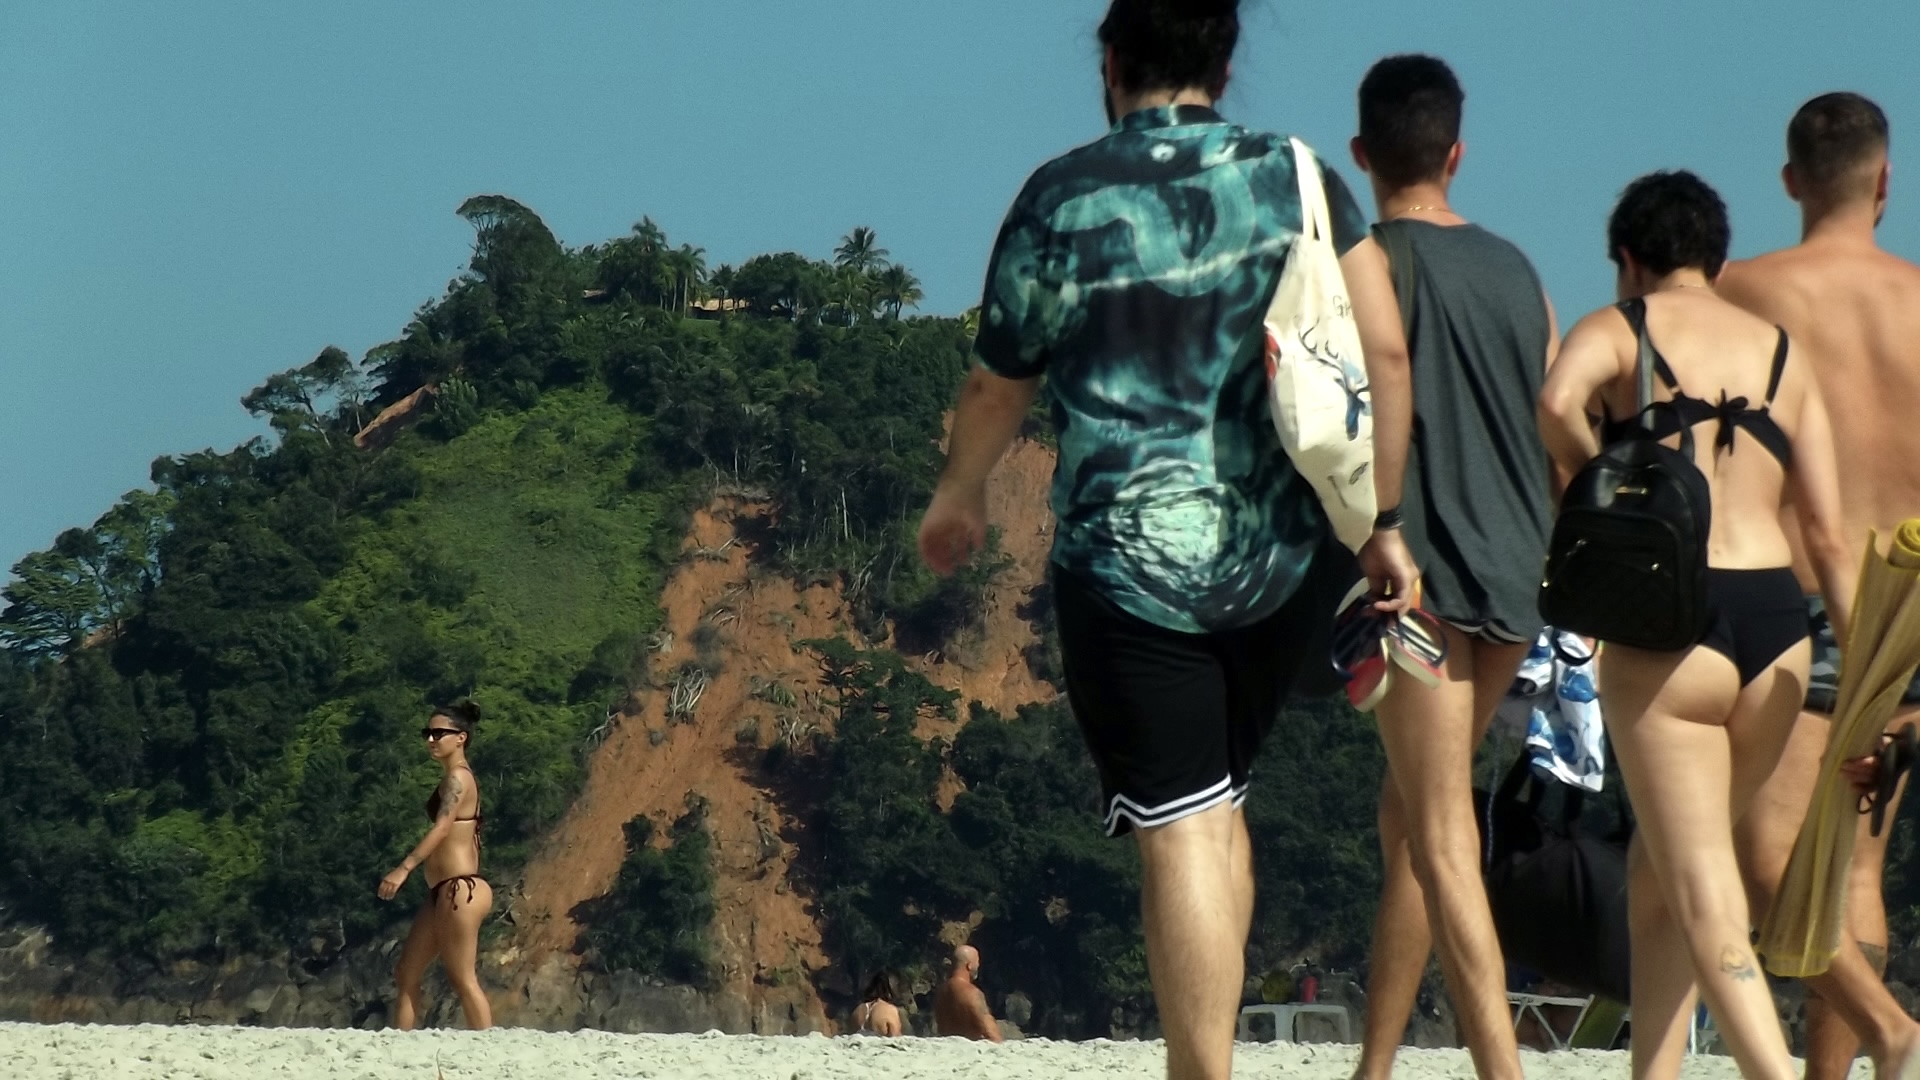 Família andando na praia com os morros deslizados como paisagem